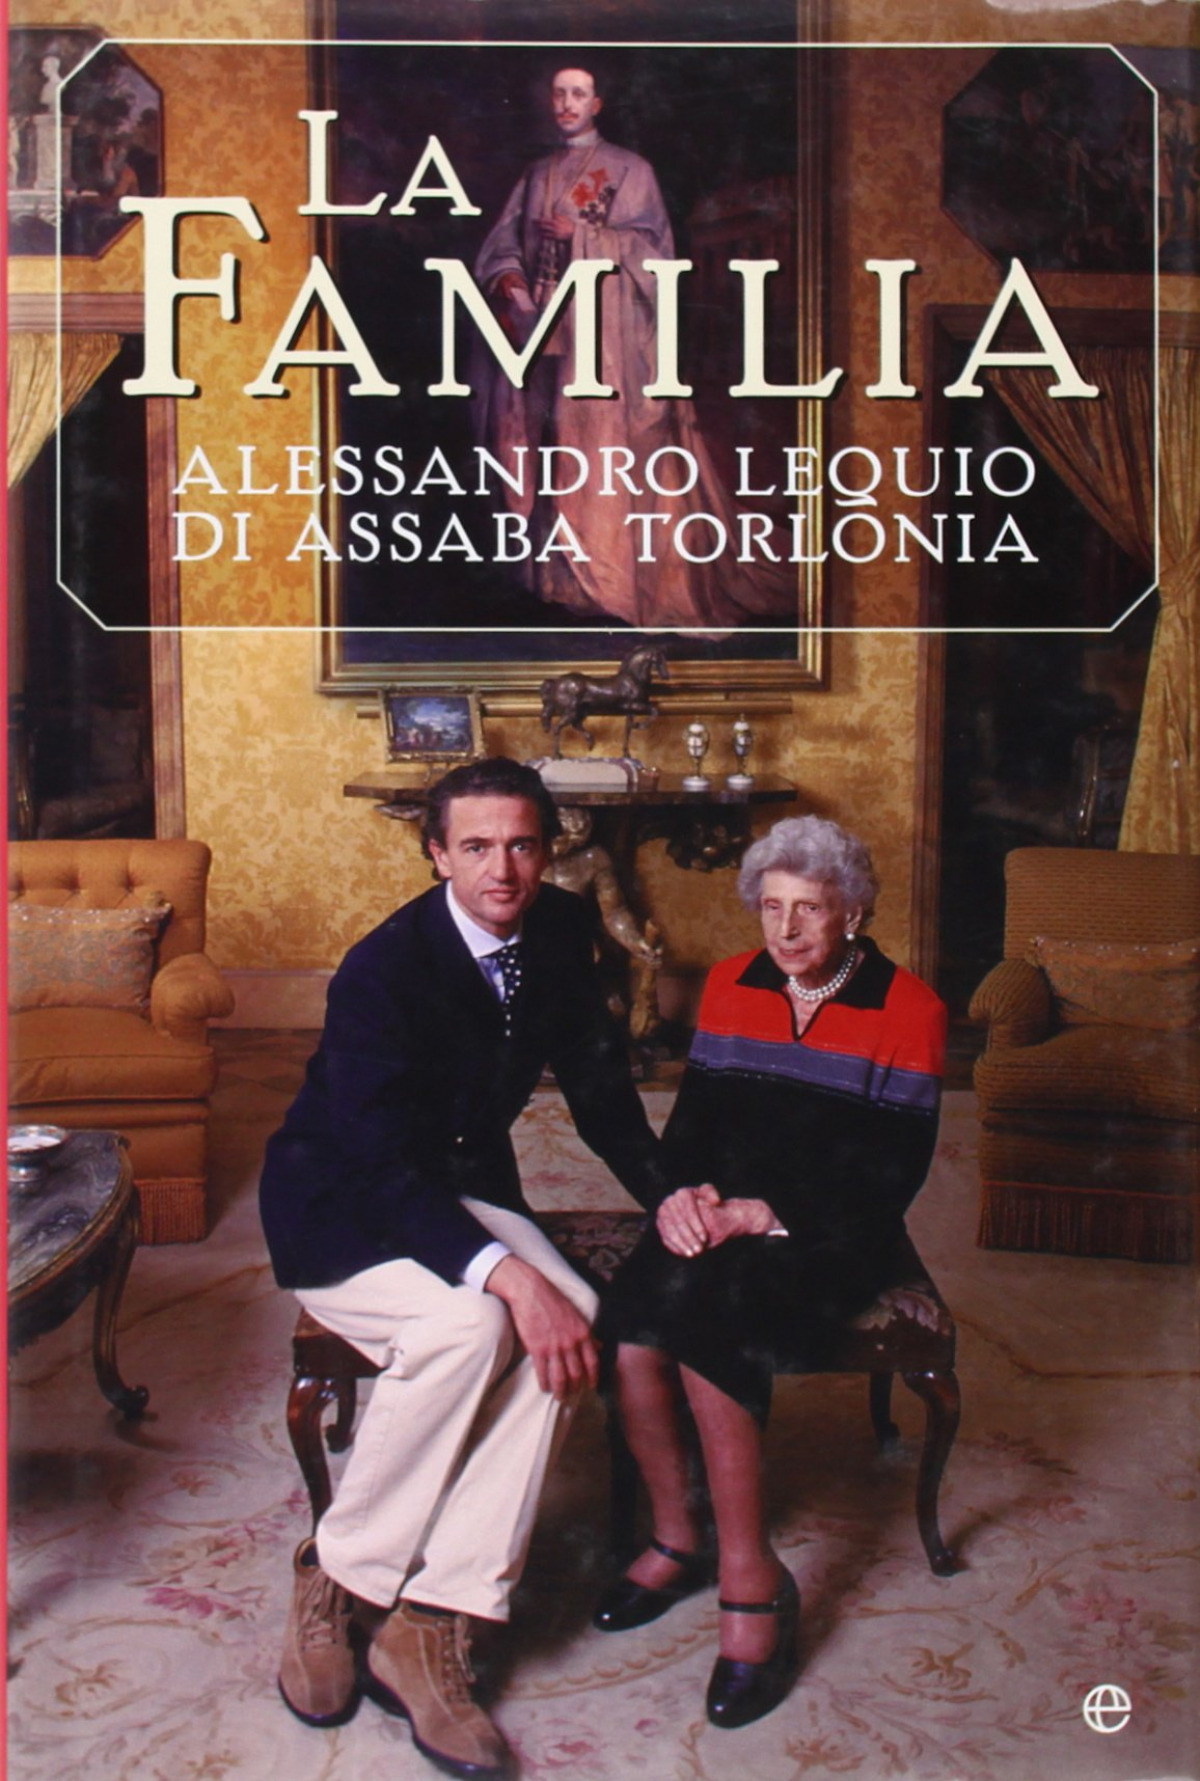 La familia - Alessandro Lequio di Assaba Torlonia